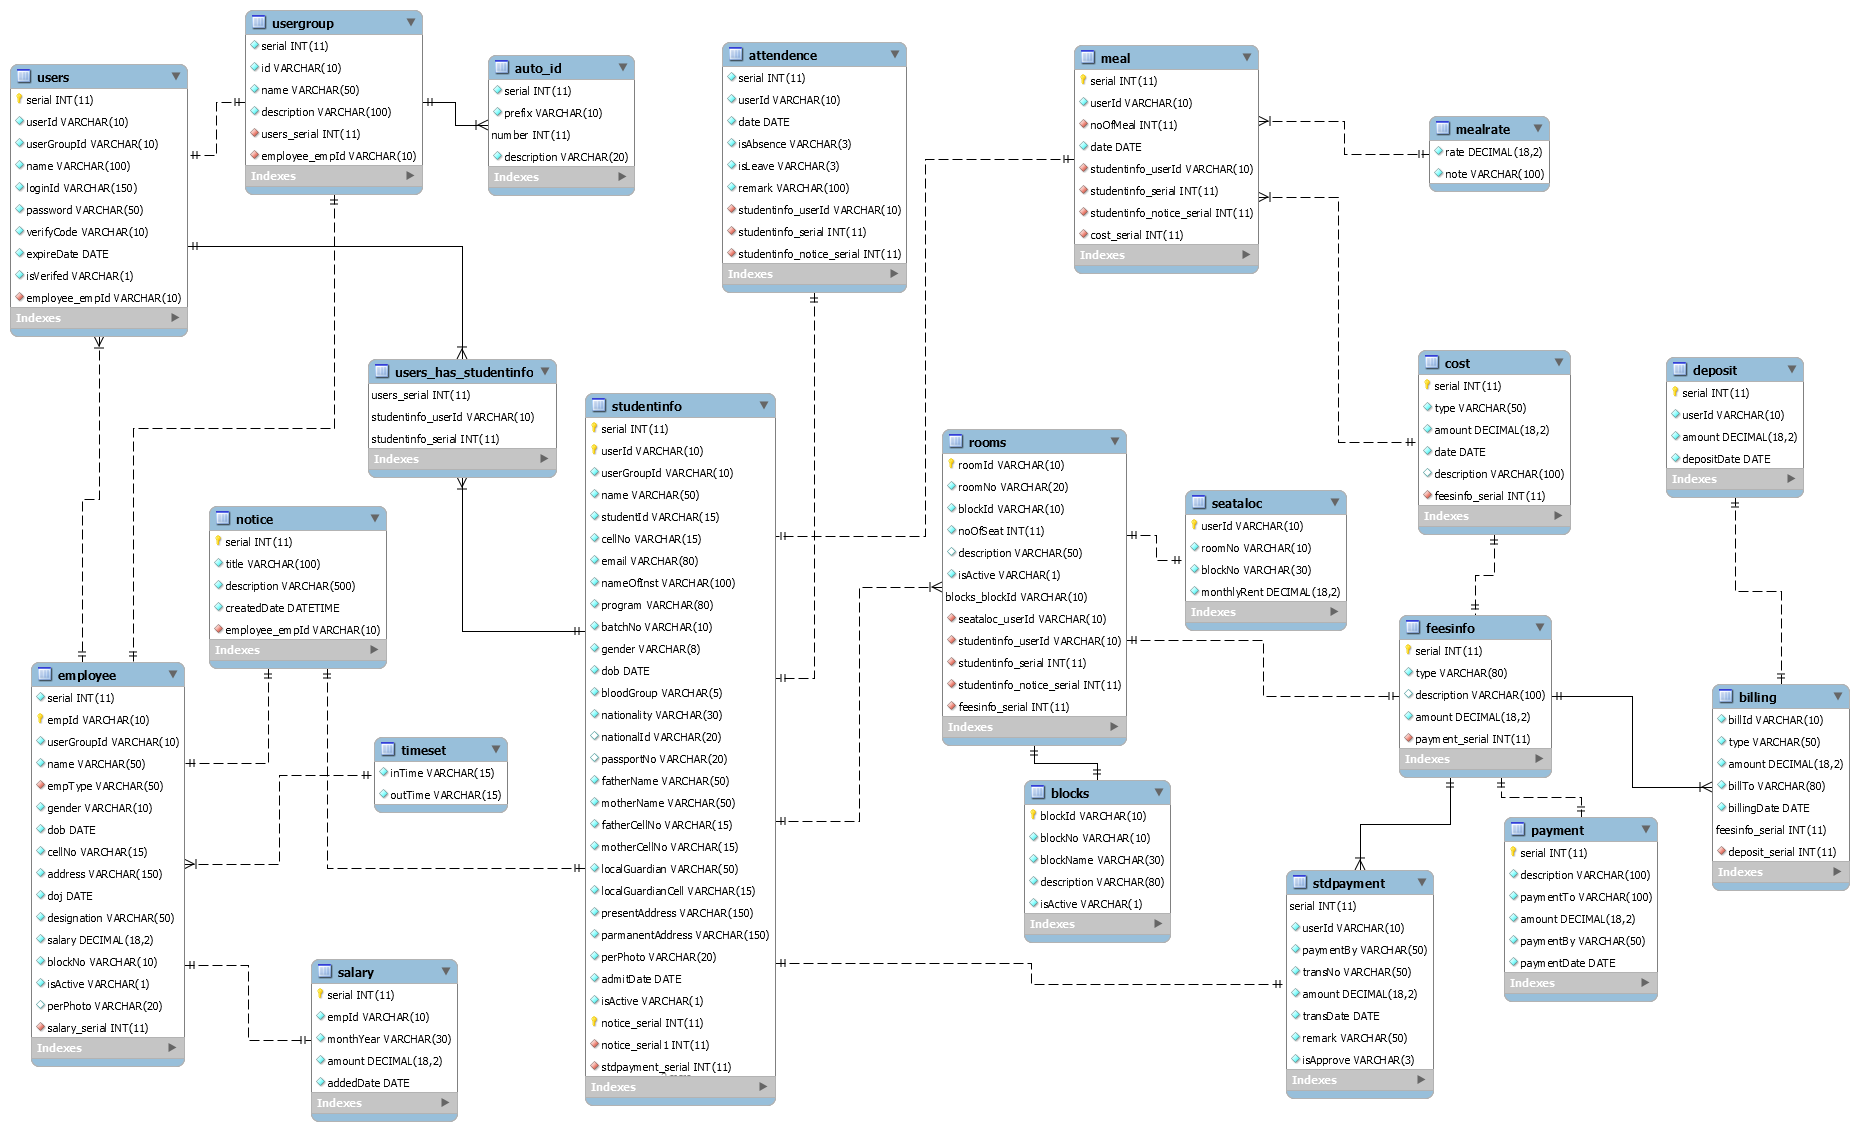 hostel_management database EER diagram.png